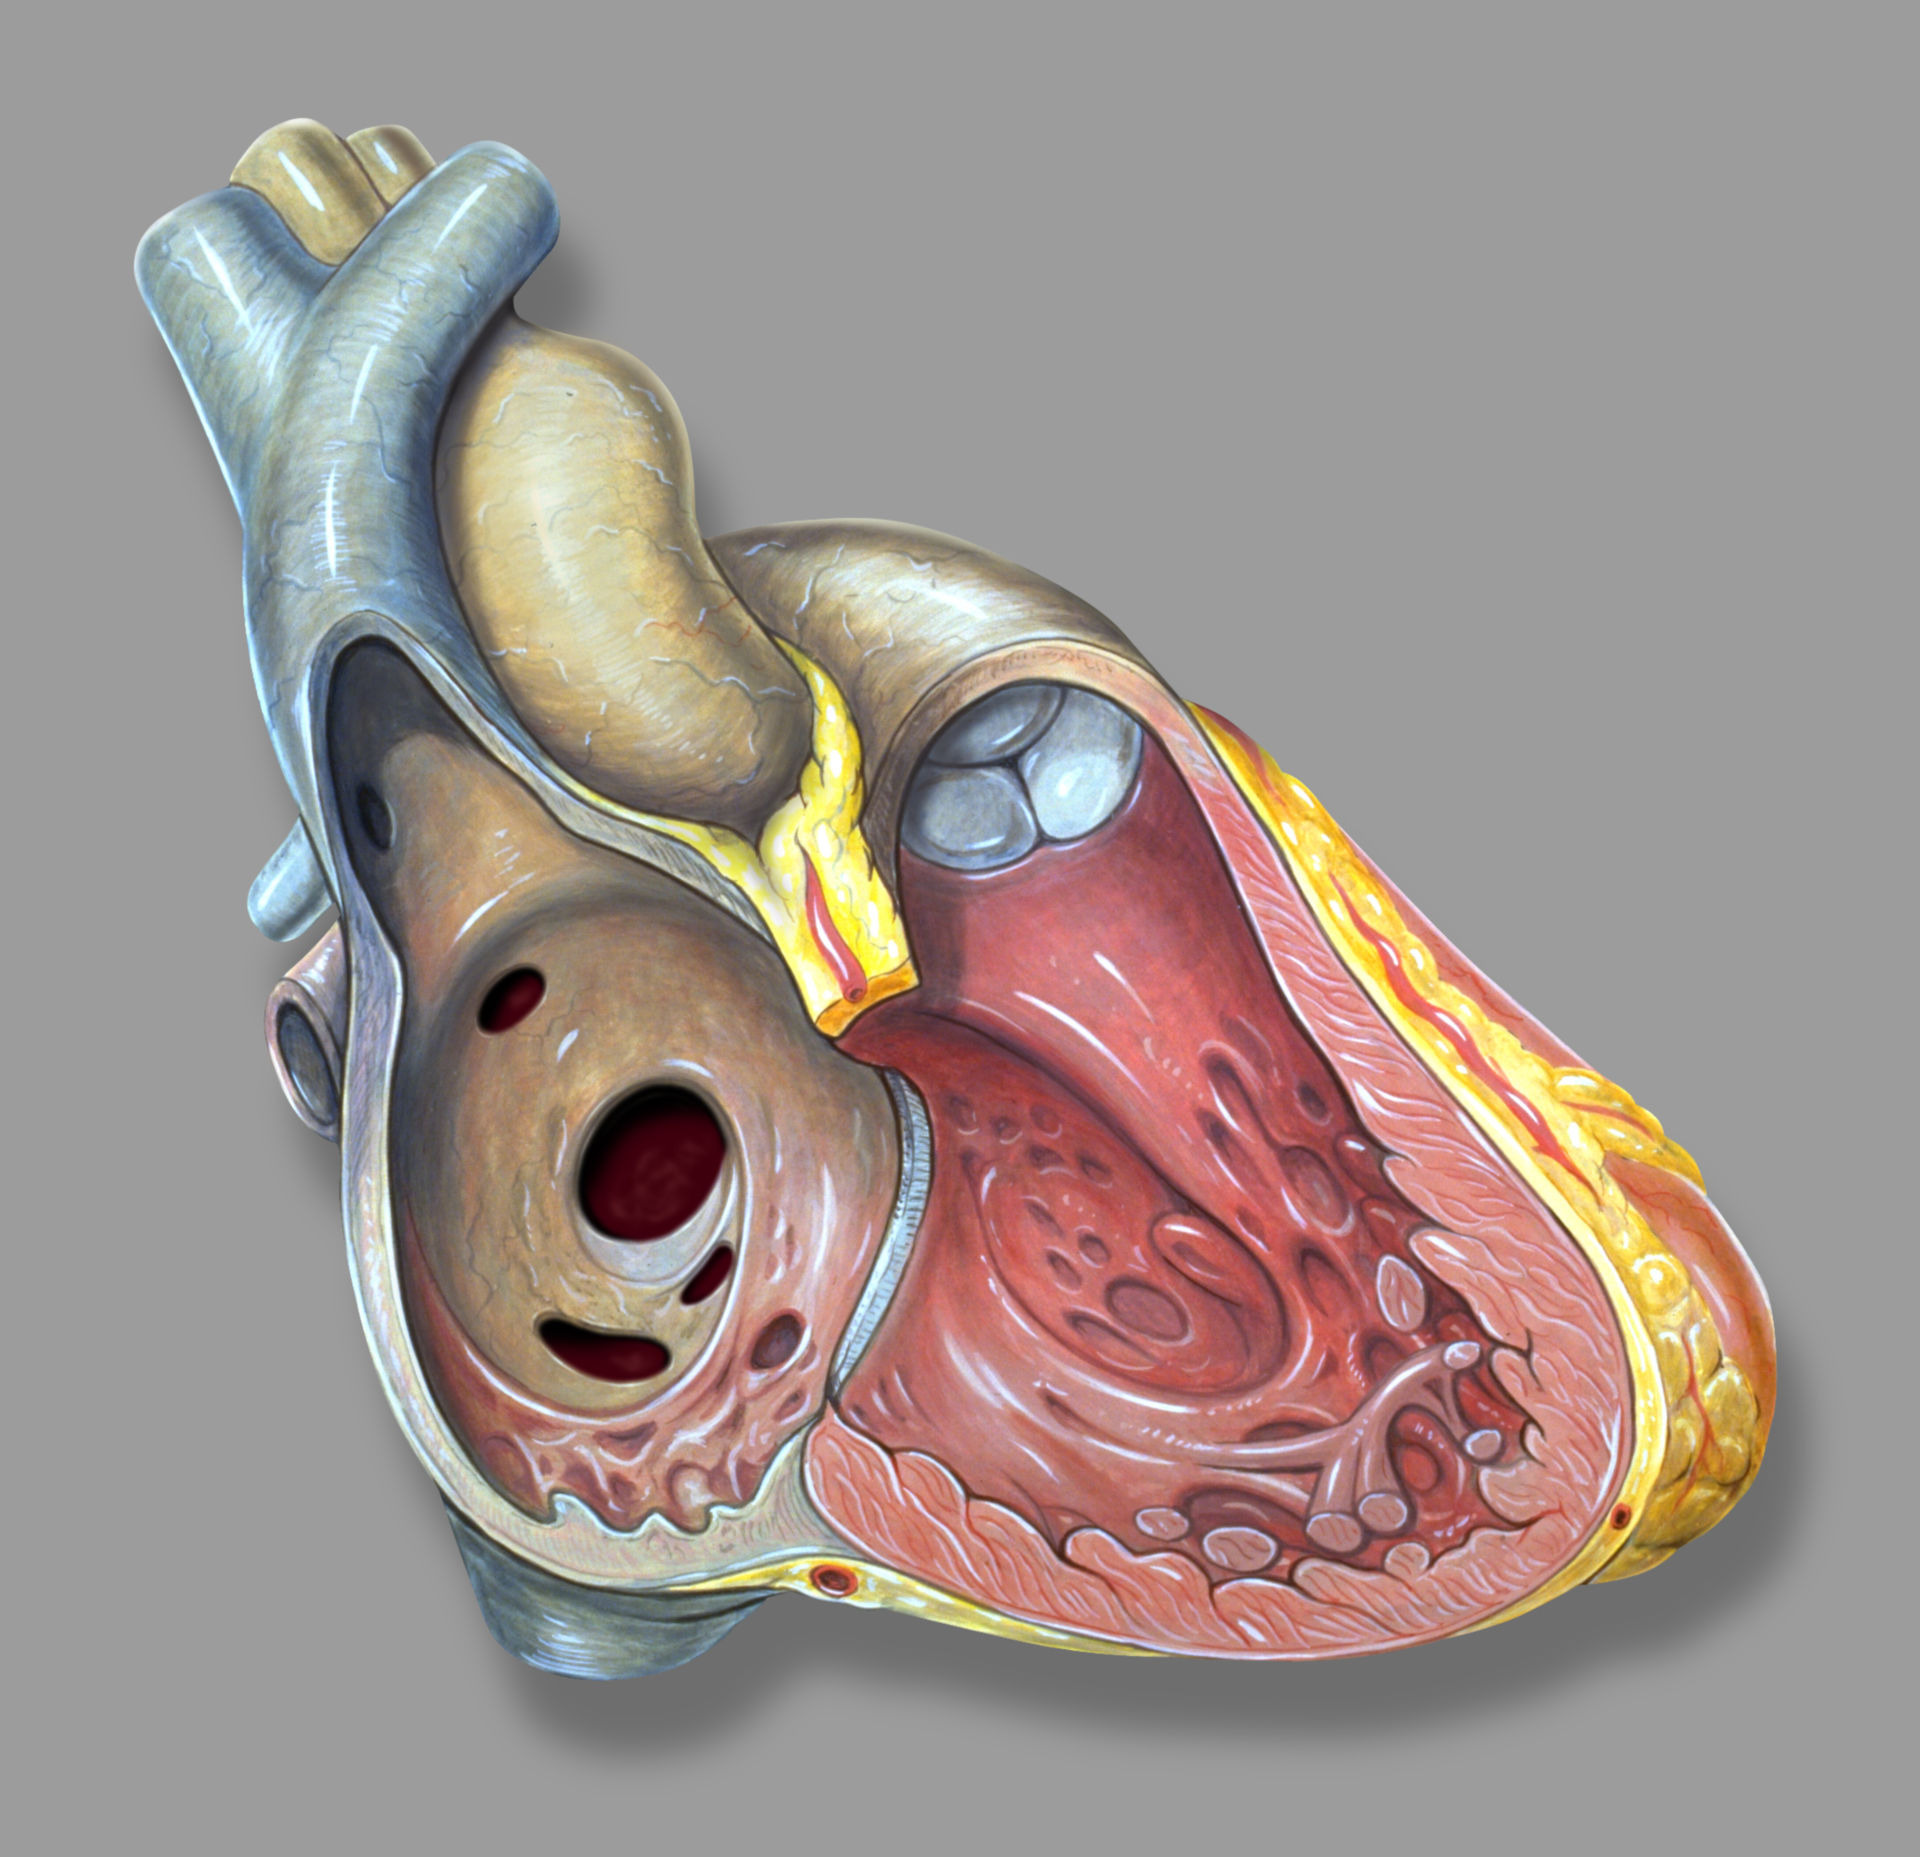 Eröffnetes Herz mit Vorhofseptumdefekten (Illustration)